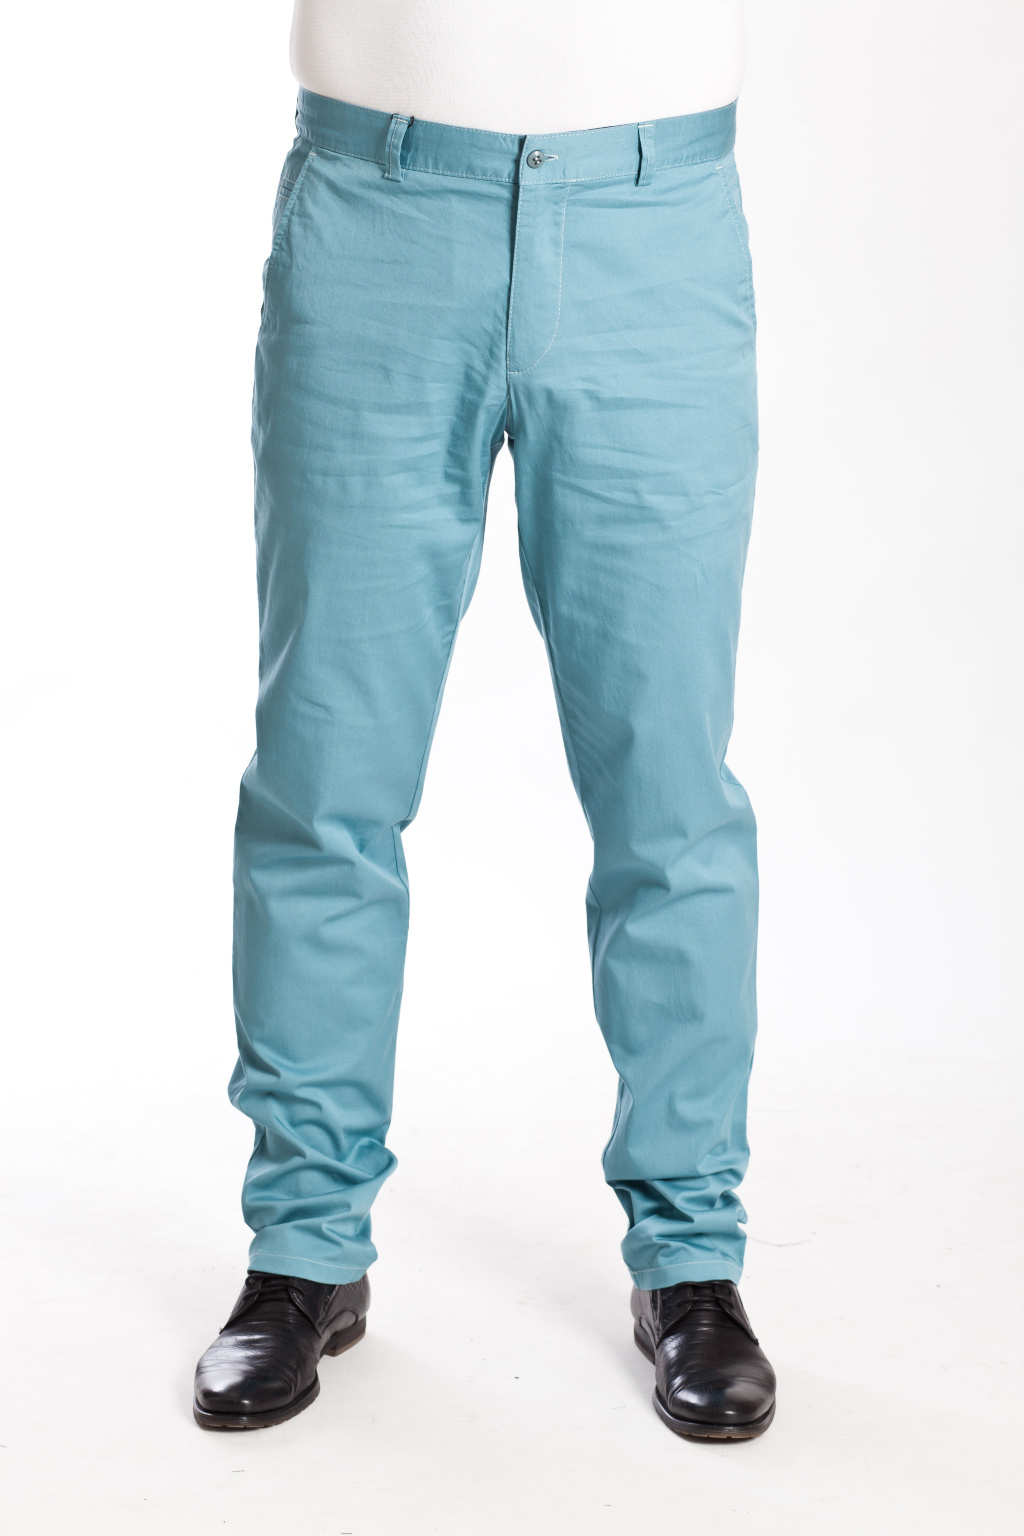 Мужские брюки в стиле Casual в интернет-магазине «Мир брюк»